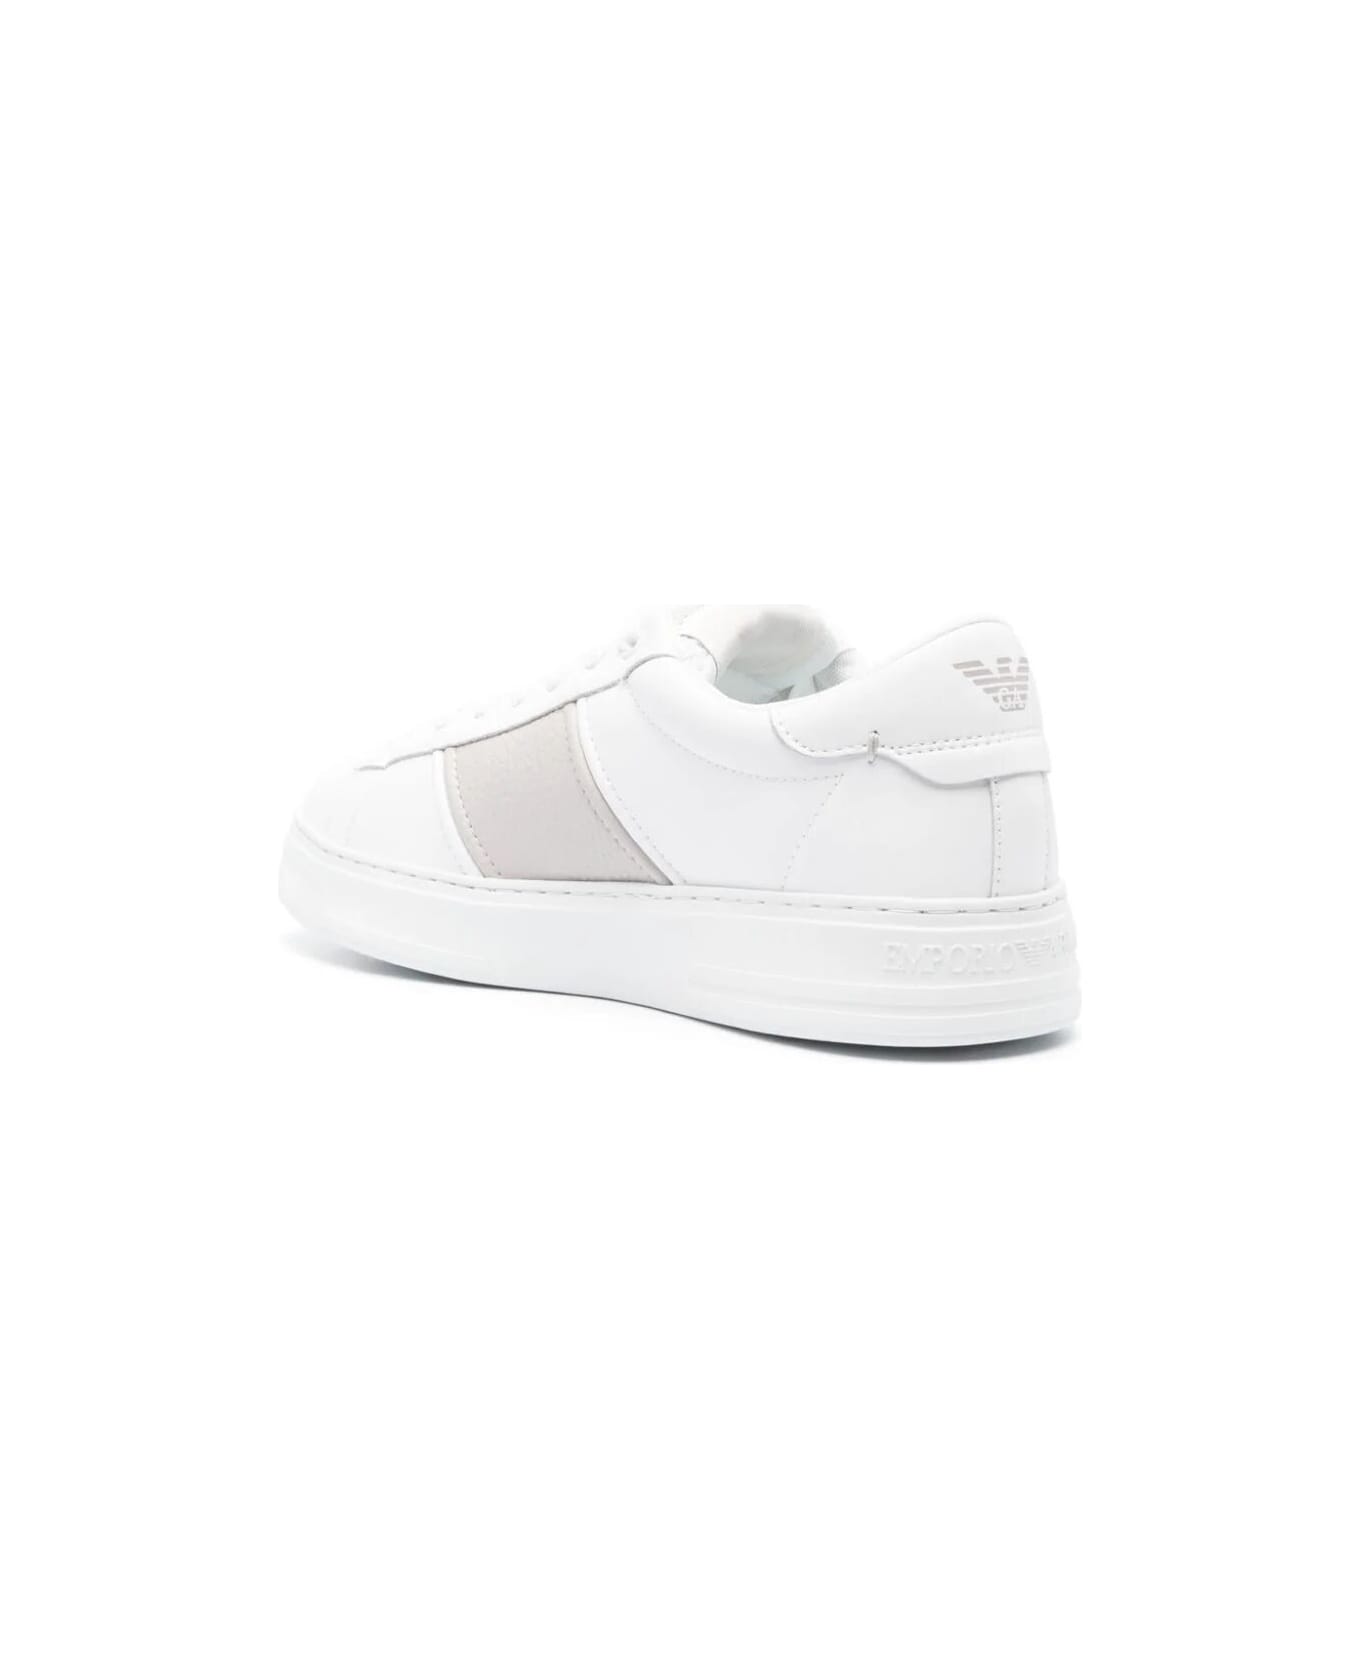 Emporio Armani Sneaker Mesh - Opt White Silver スニーカー